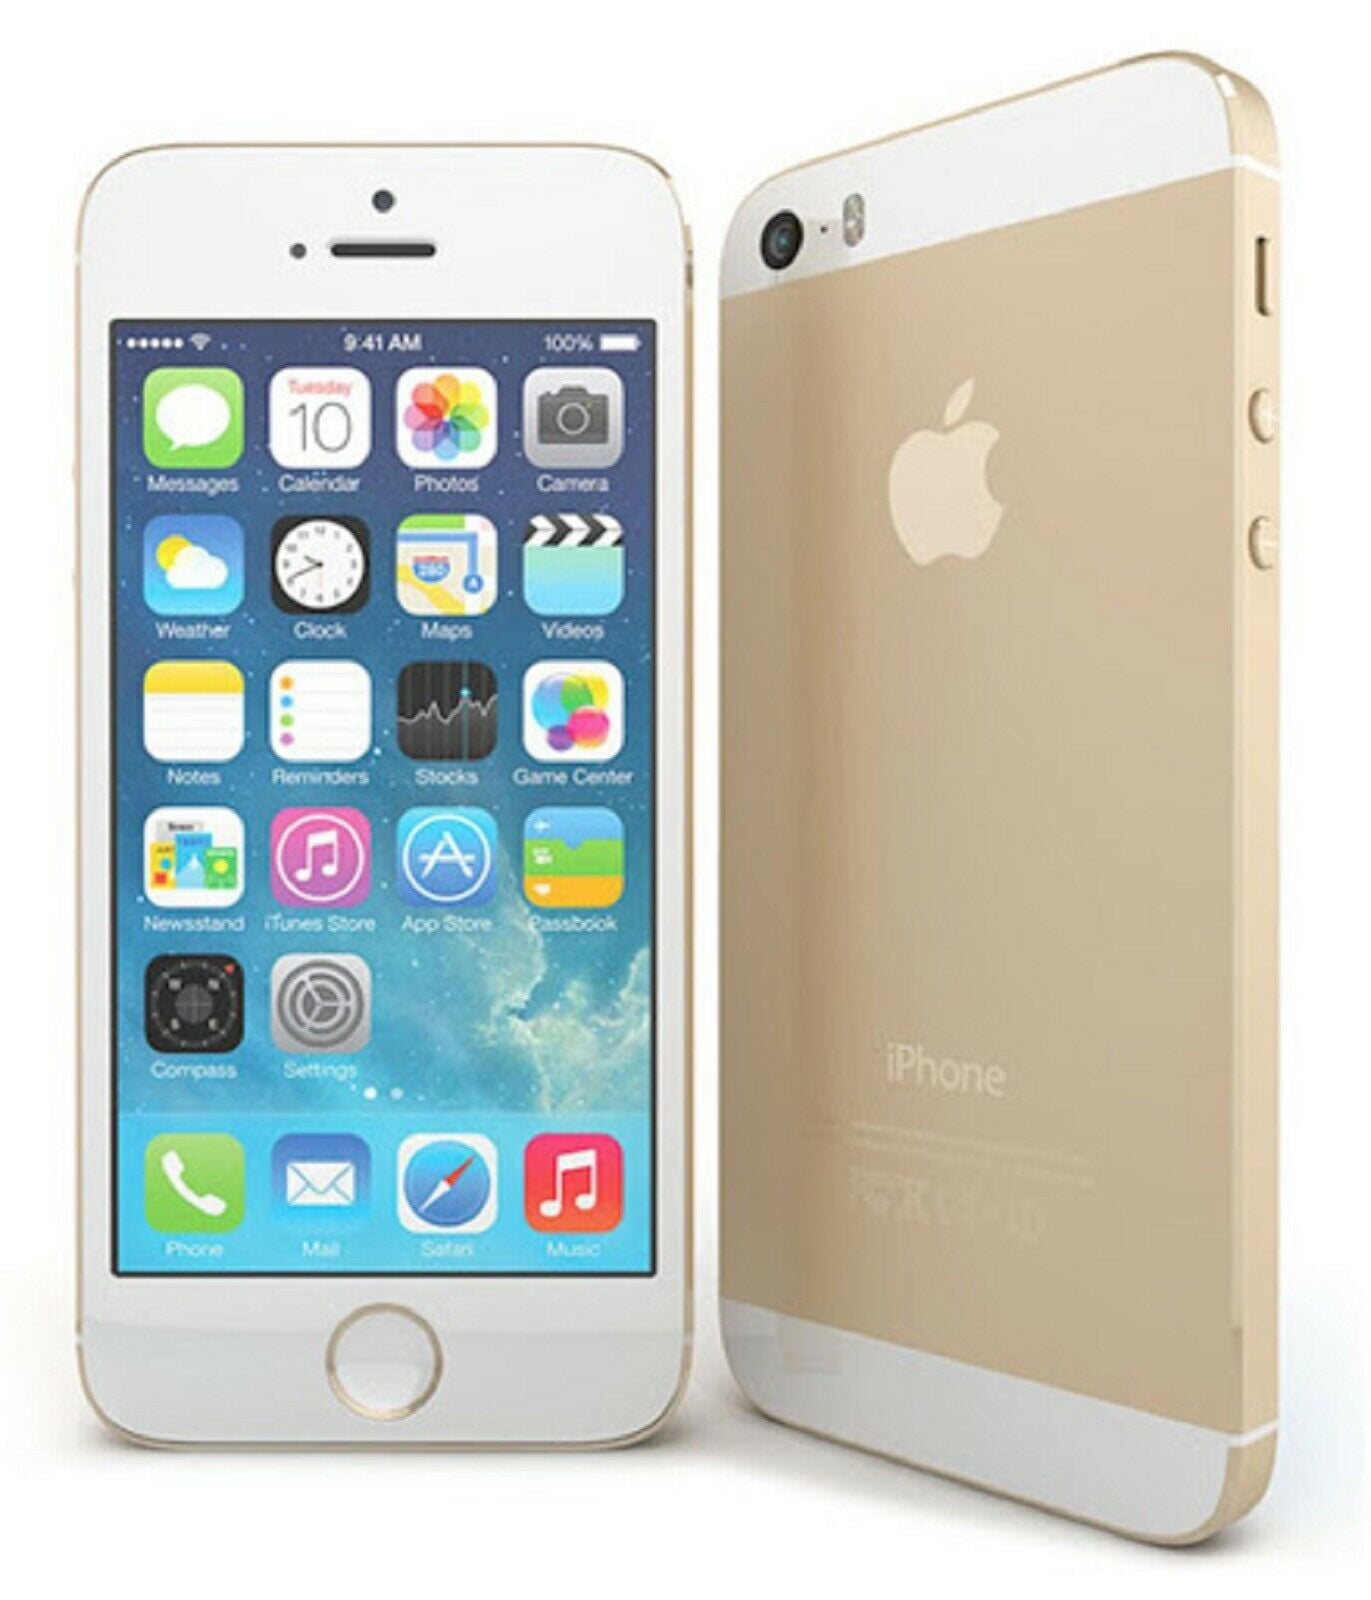 スマートフォン/携帯電話 スマートフォン本体 iPhone 5s gold | www.myglobaltax.com